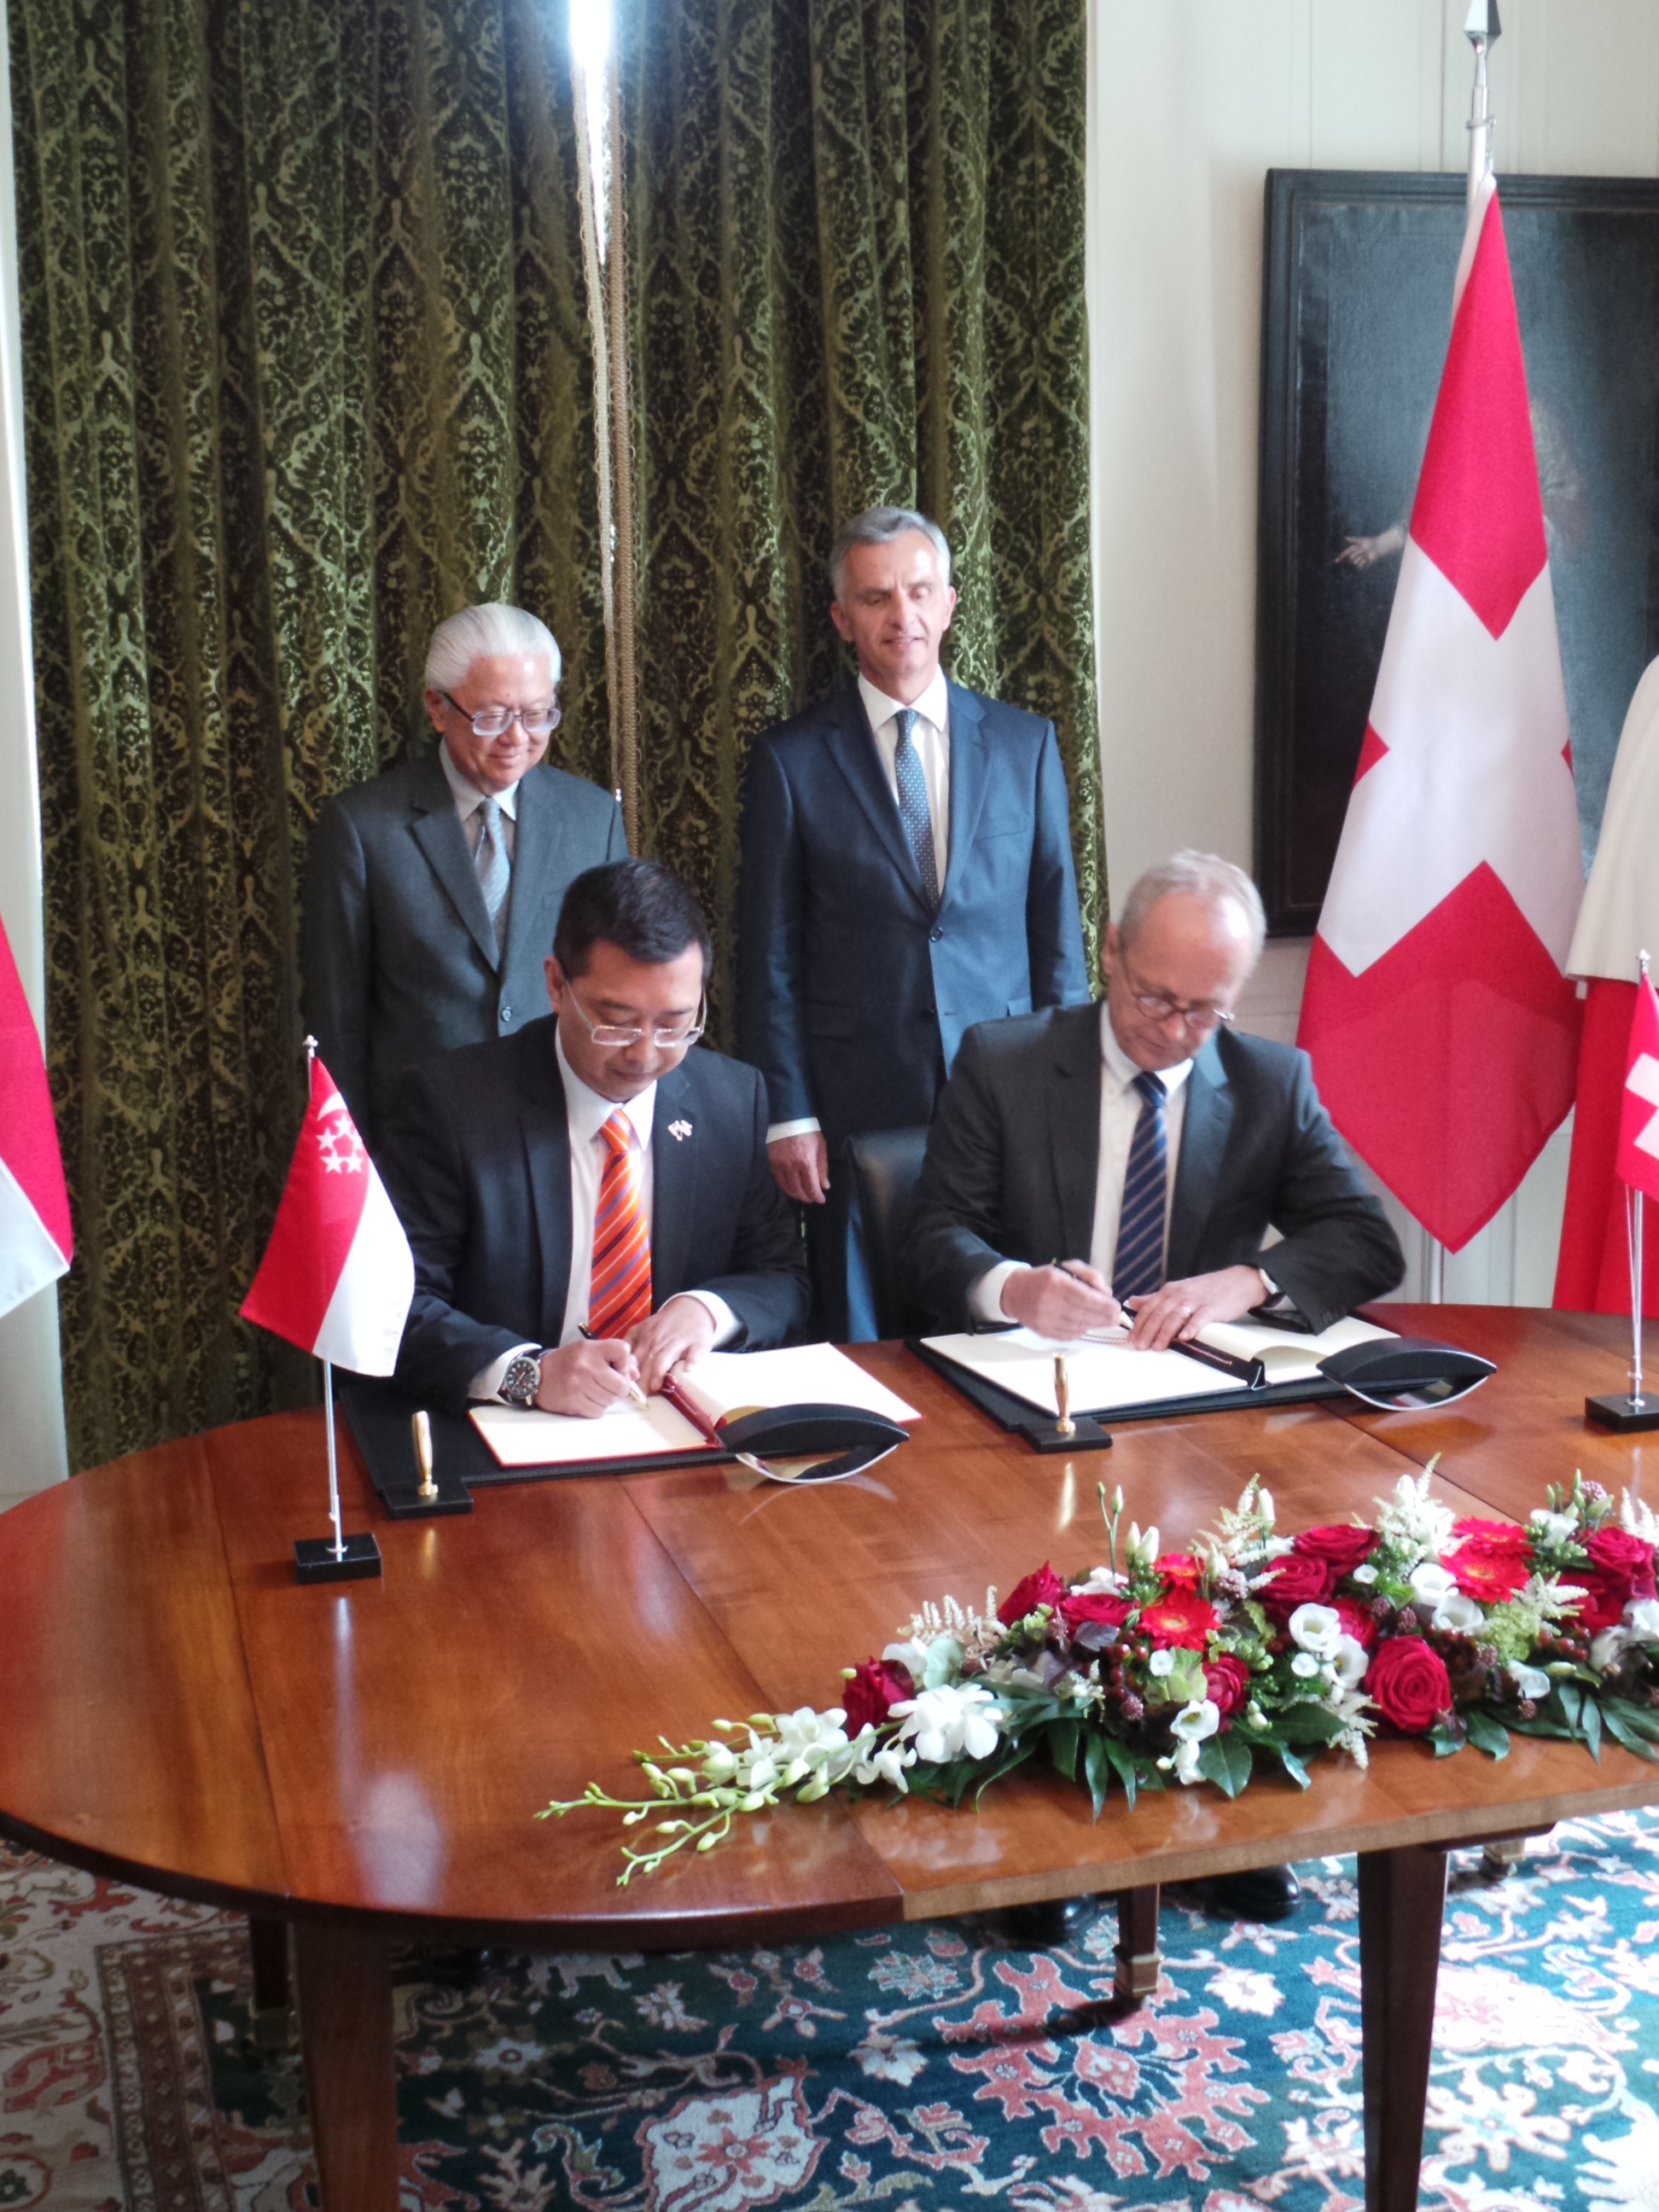 Les secrétaires d’Etat suppléants Beat Nobs et Simon Wong signent la déclaration d’approfondissement du partenariat entre la Suisse et Singapour. Au second plan, le président de la Confédération, Didier Burkhalter, et le président de la République de Singapour, Tony Tan Keng Yam.